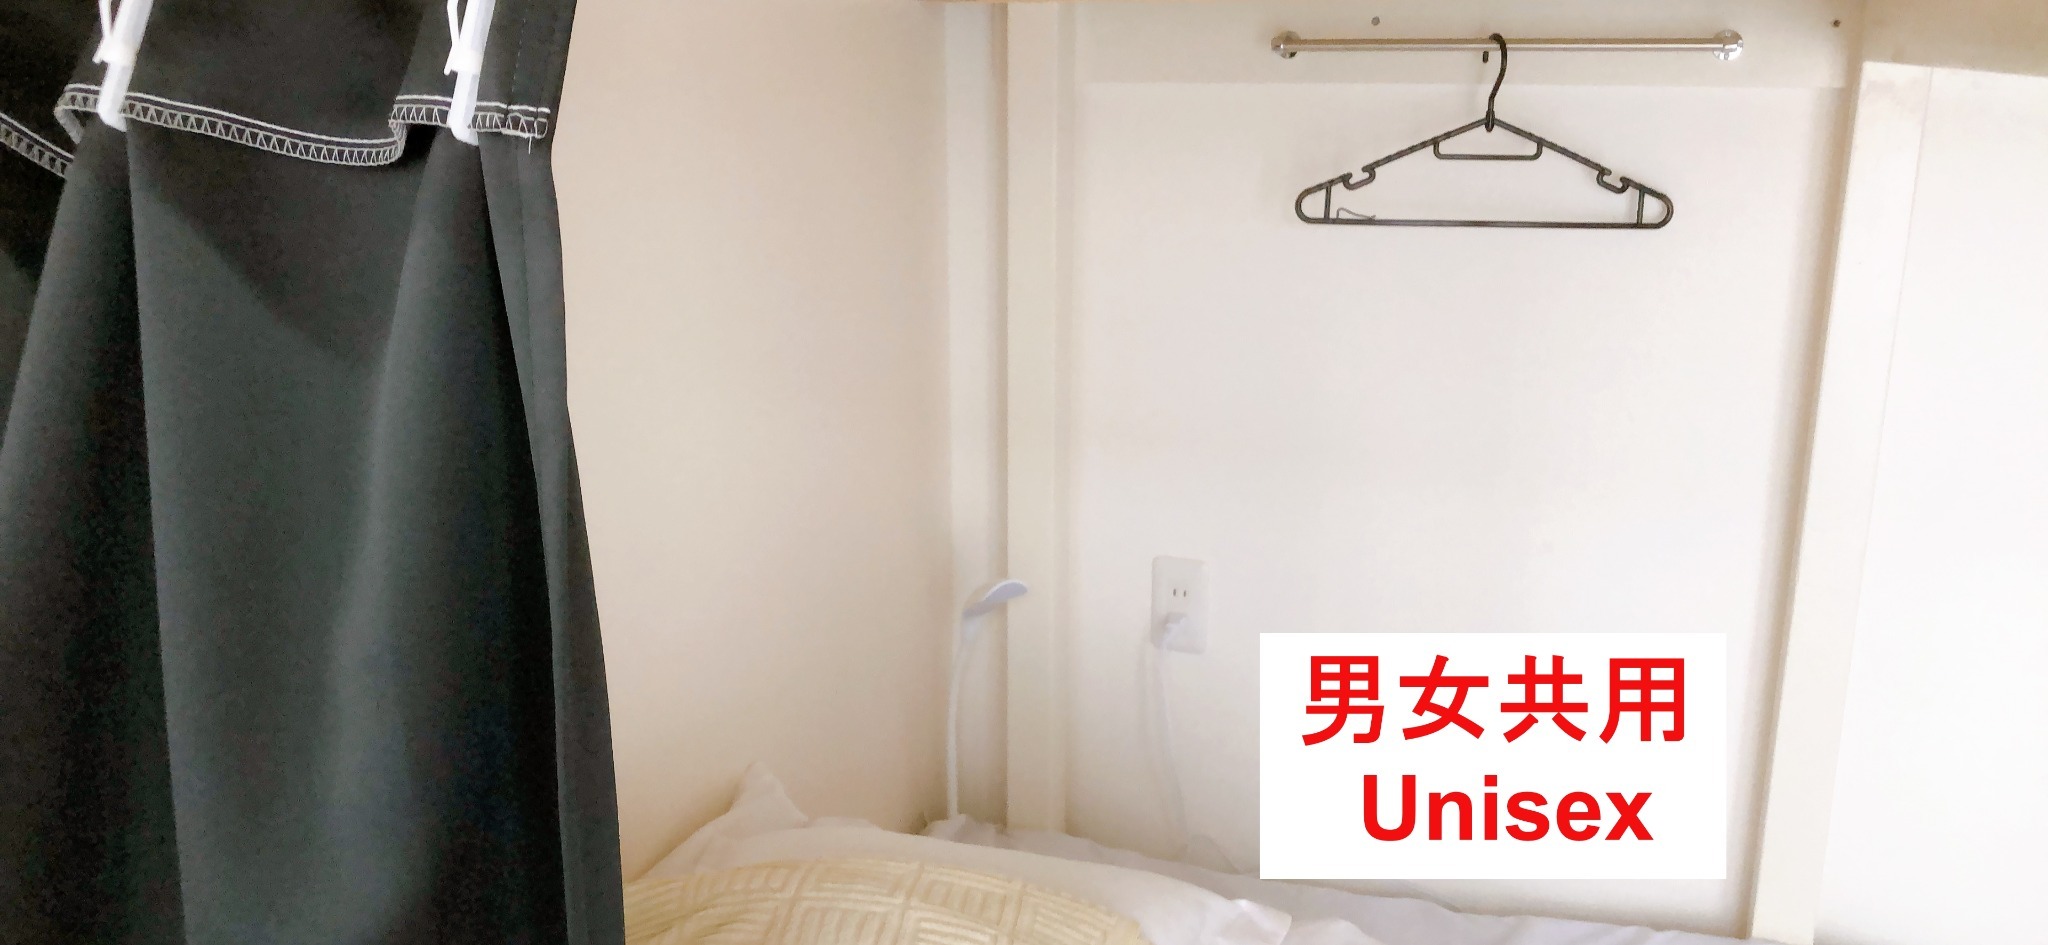 3階【ドミトリータイプ】2段ベッド 男女共用ルーム/最大4名様まで宿泊可能(ベッド1名分)